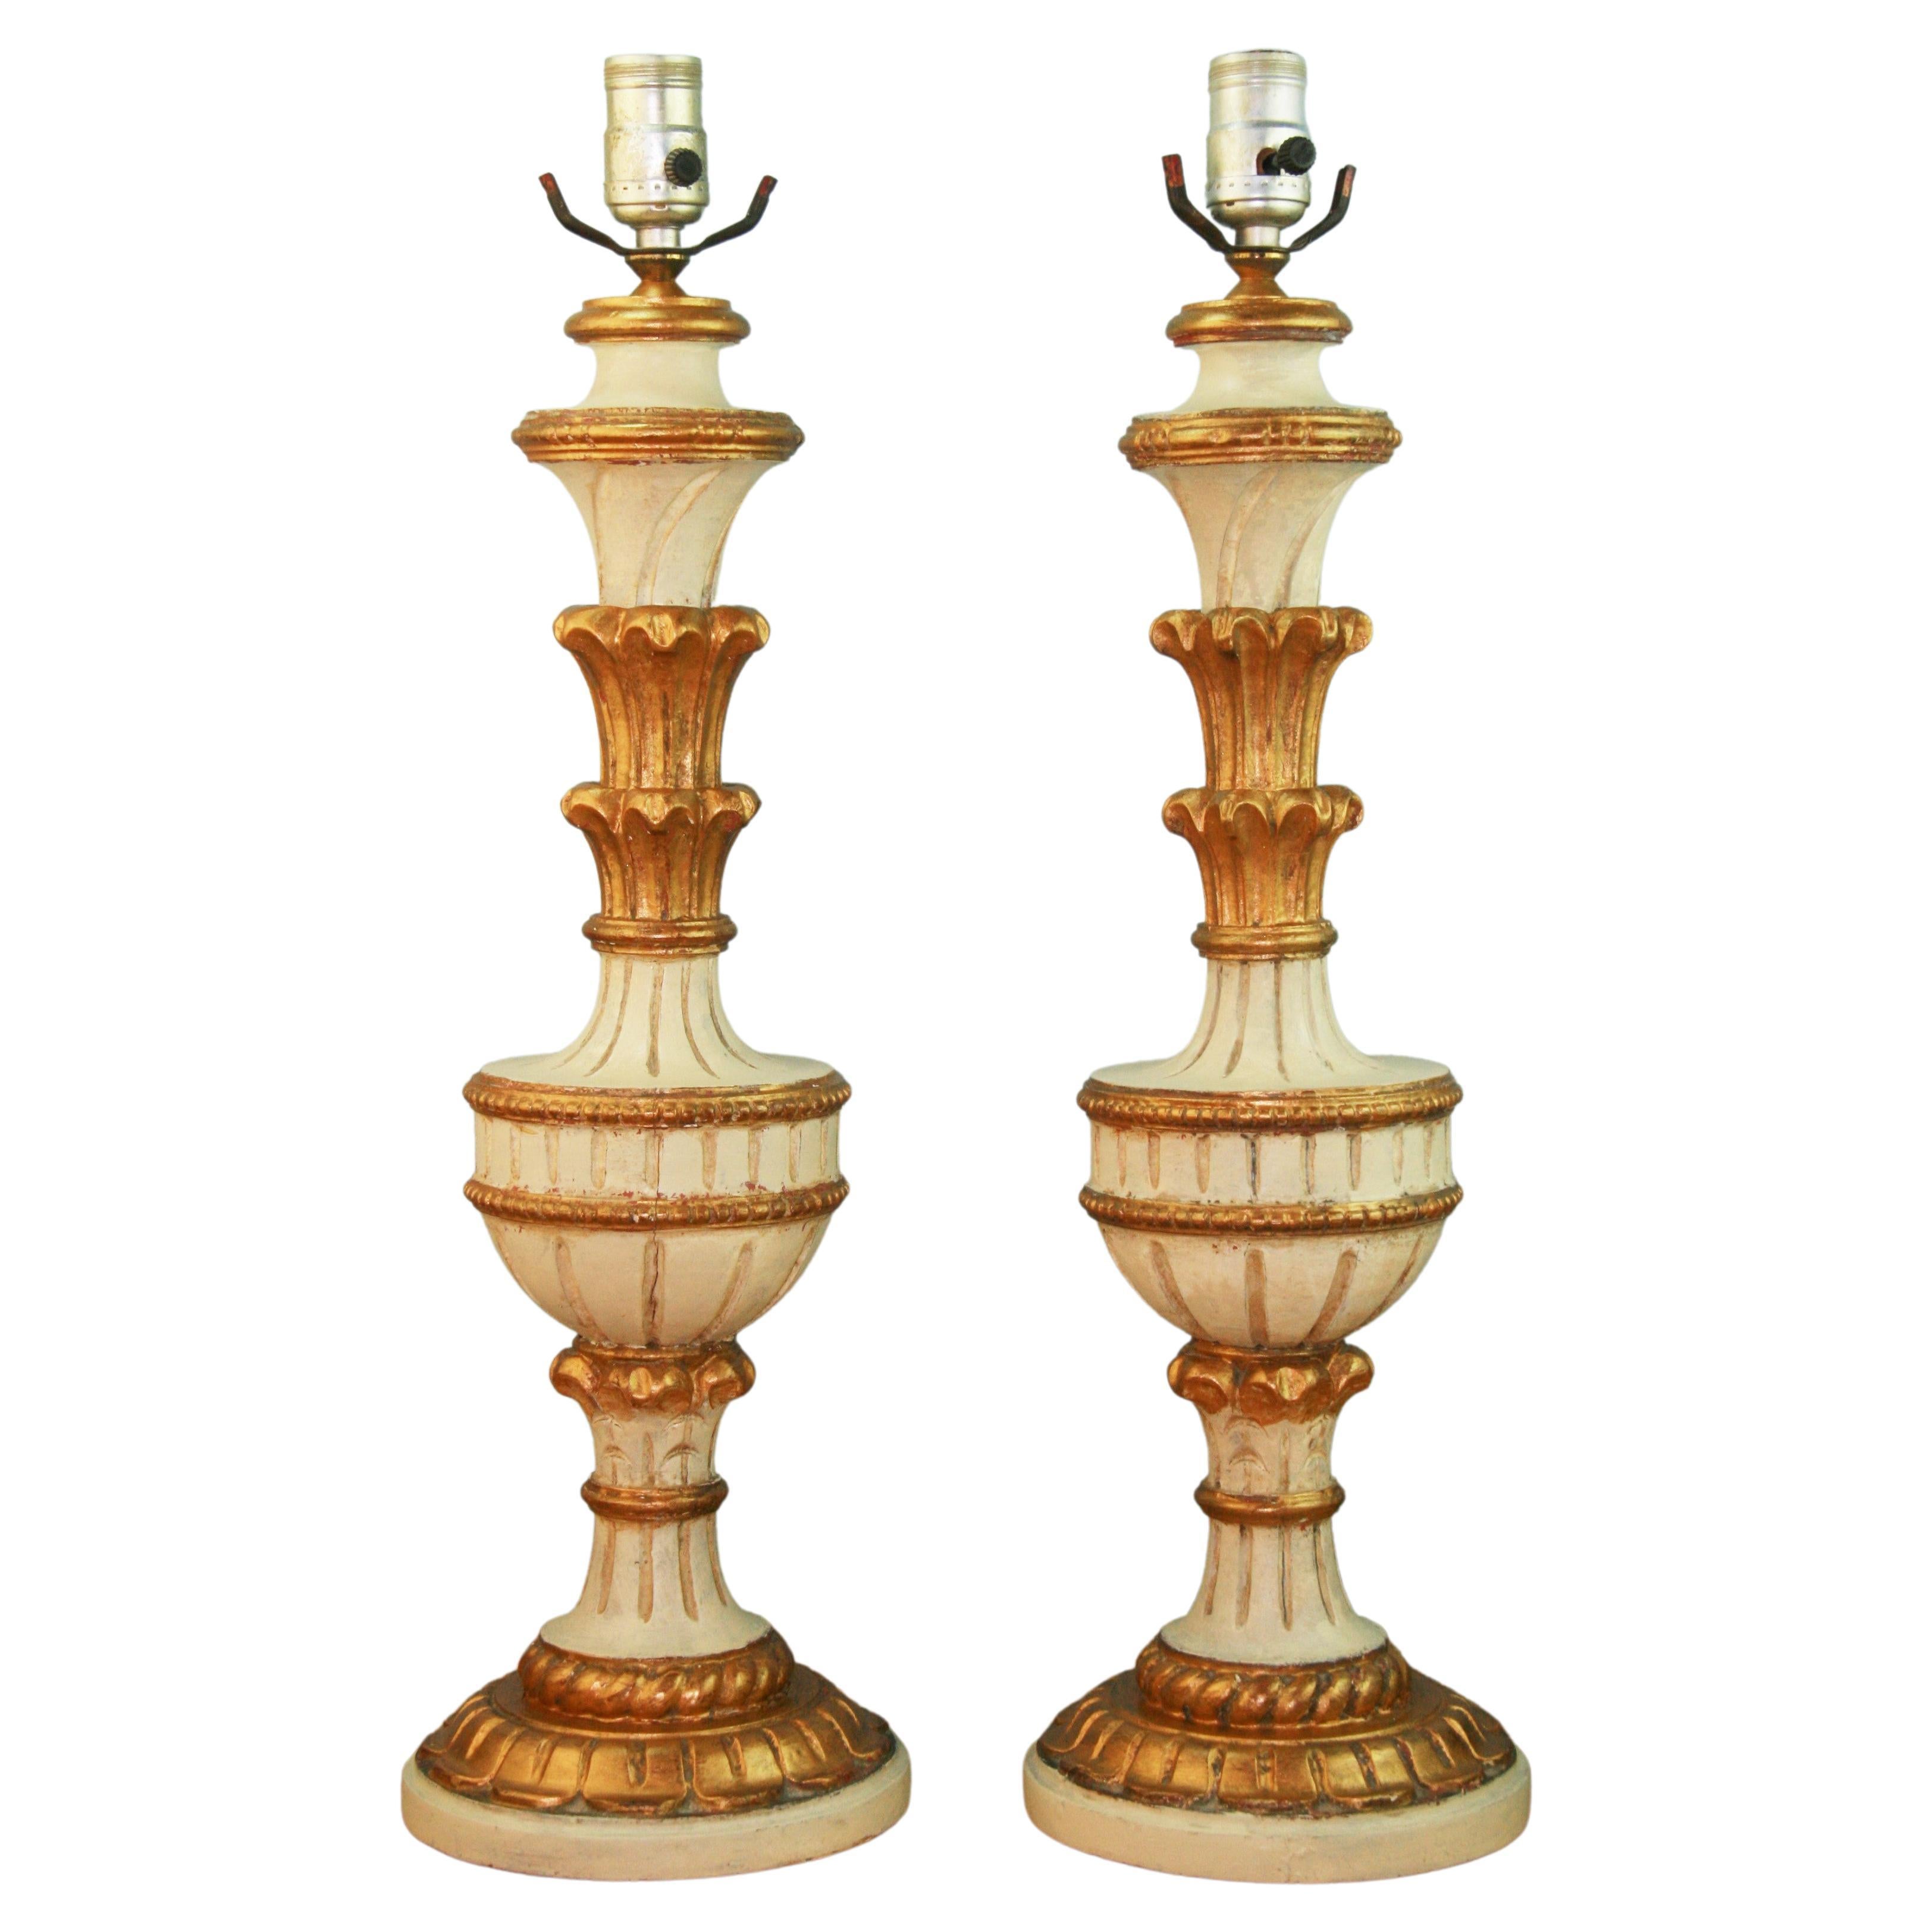 Paire de lampes italiennes en bois doré sculpté et peint, datant des années 1940 environ en vente